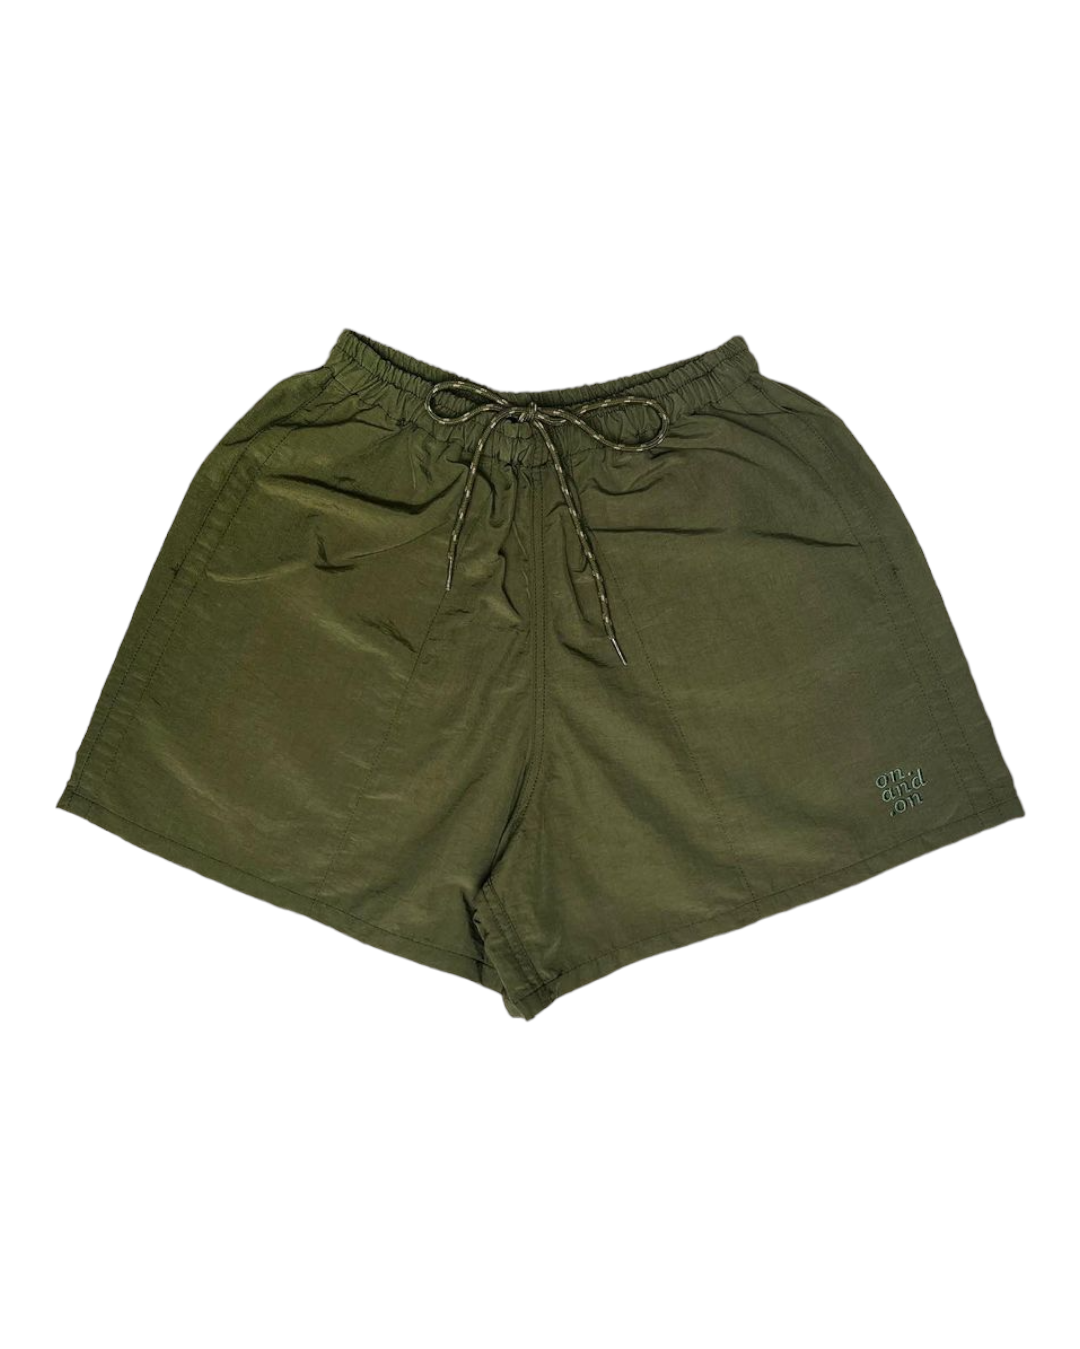 Sunny Shorts (Olive Green)